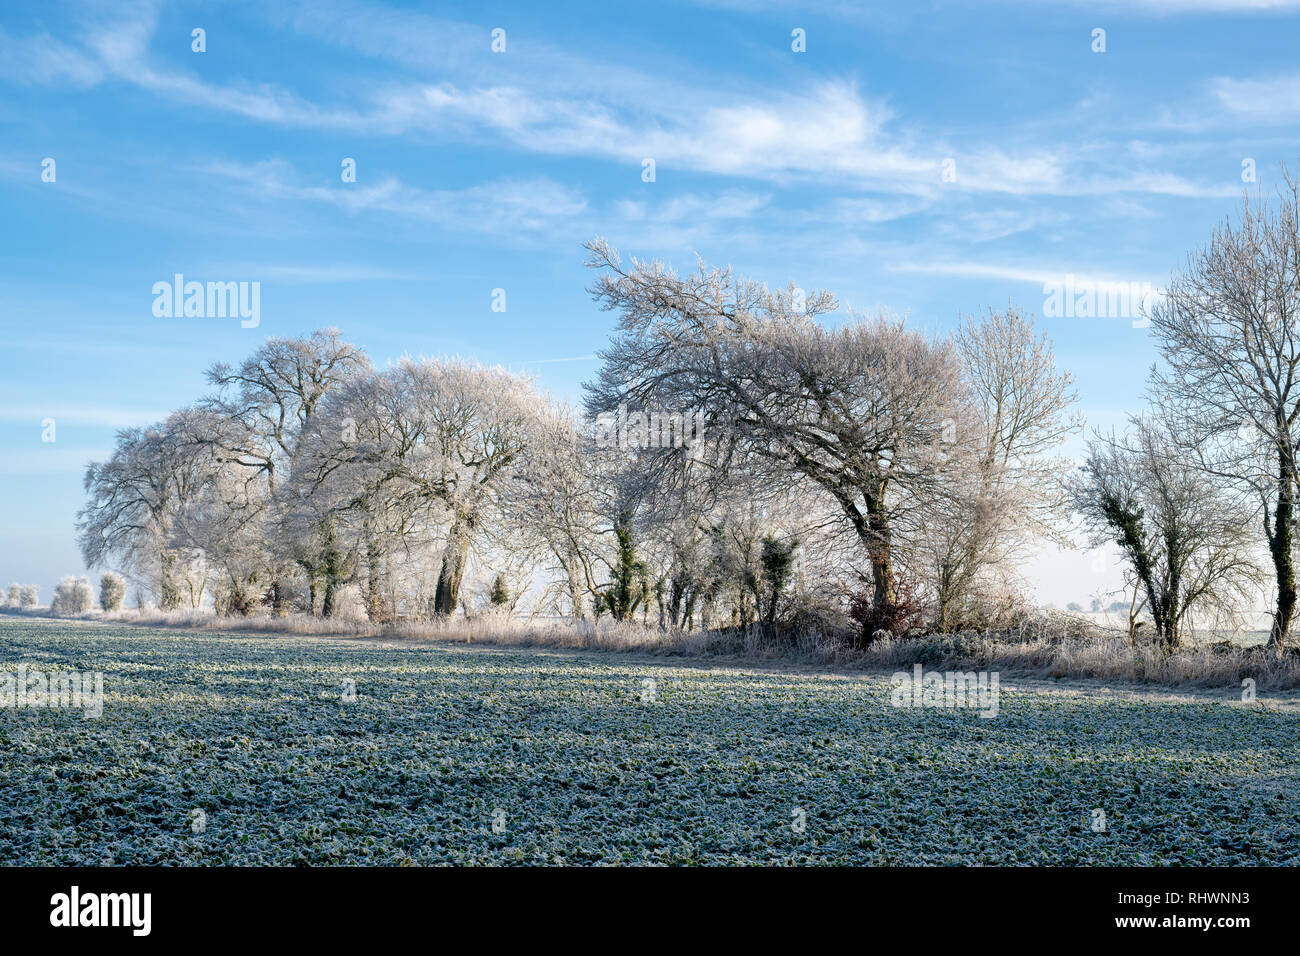 Givre sur les arbres et les terres agricoles en janvier. Près de Burford, Oxfordshire, Angleterre Gloucestershire border. Banque D'Images